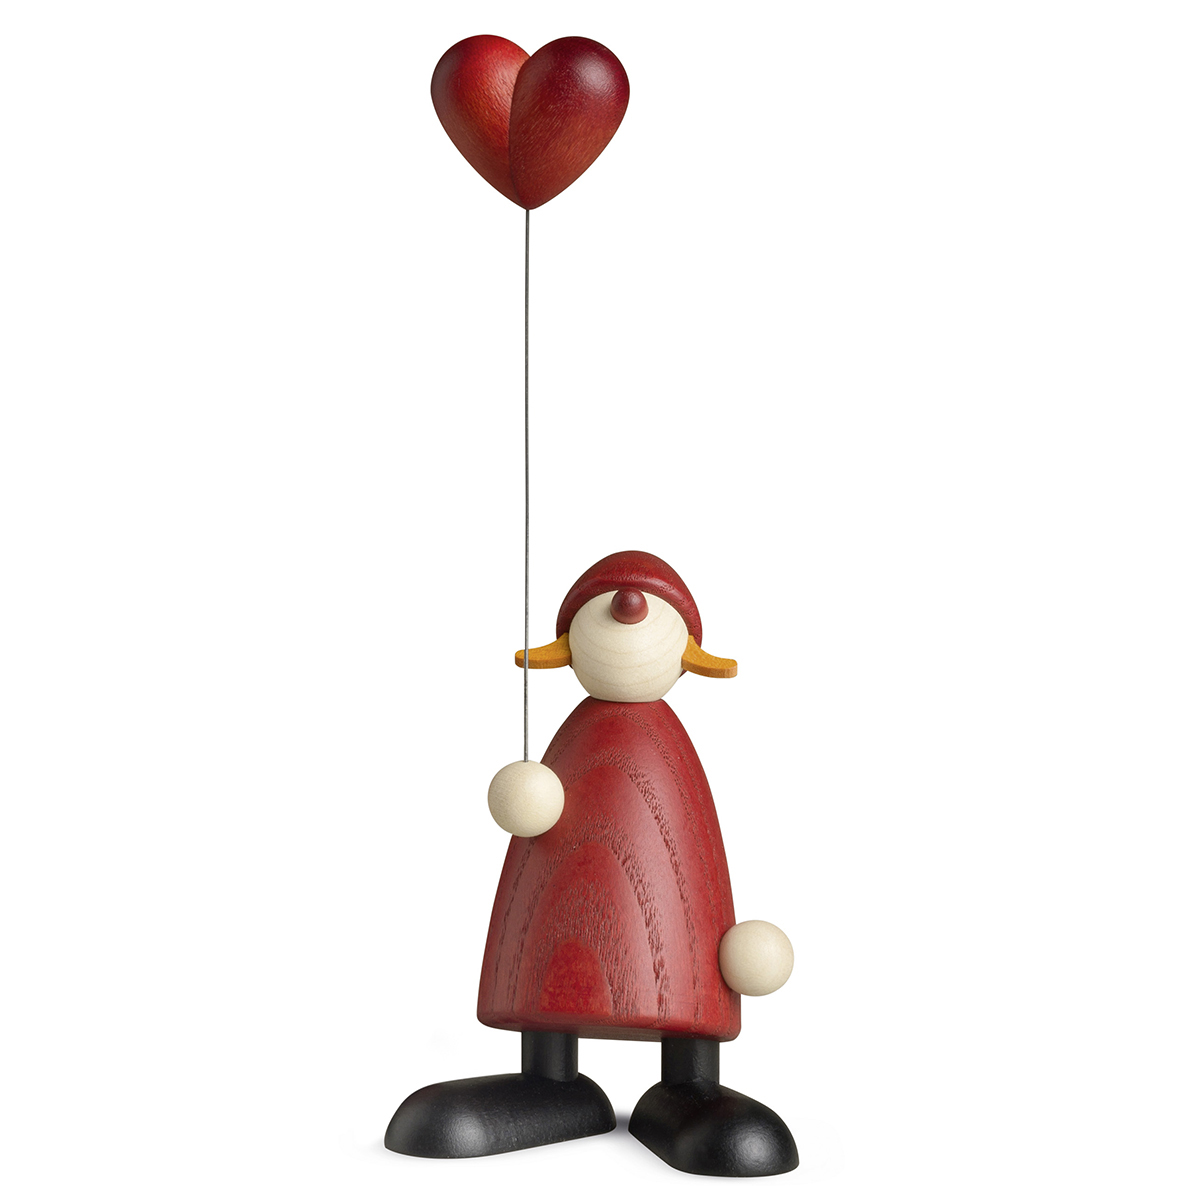 Weihnachtsfrau mit Herzballon, klein